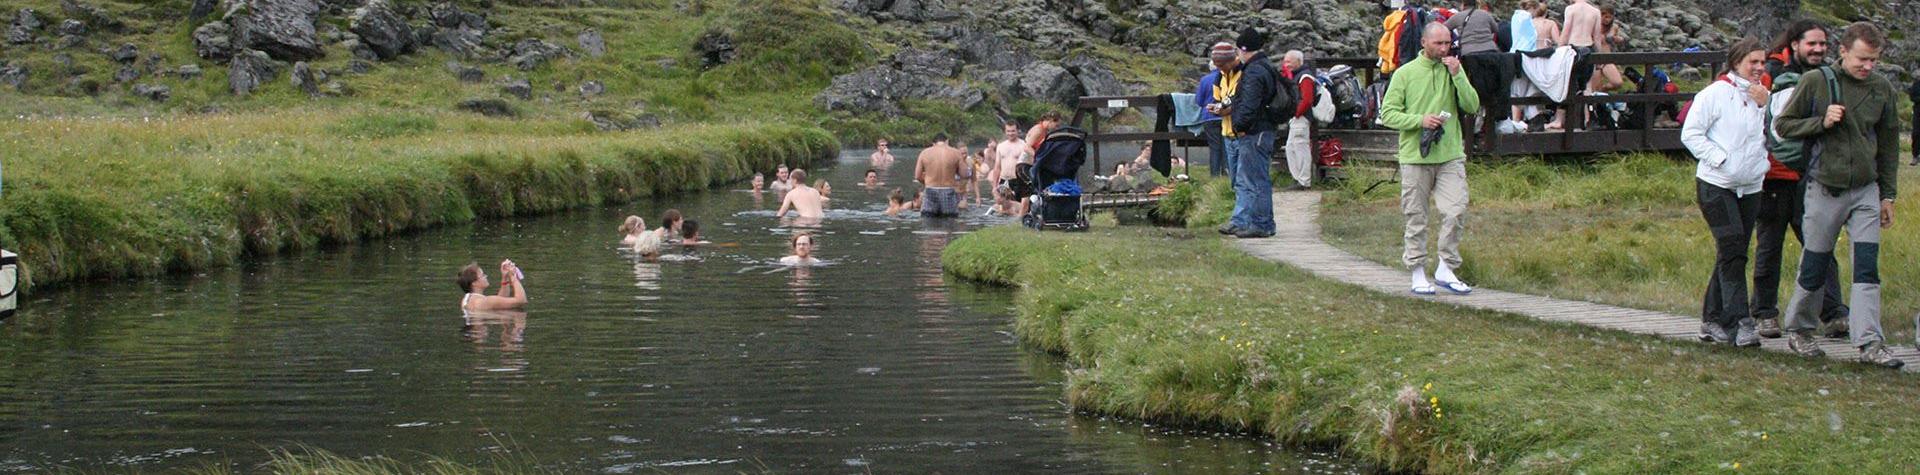 Fotturer og bad i varme kilder i det islandske høylandet